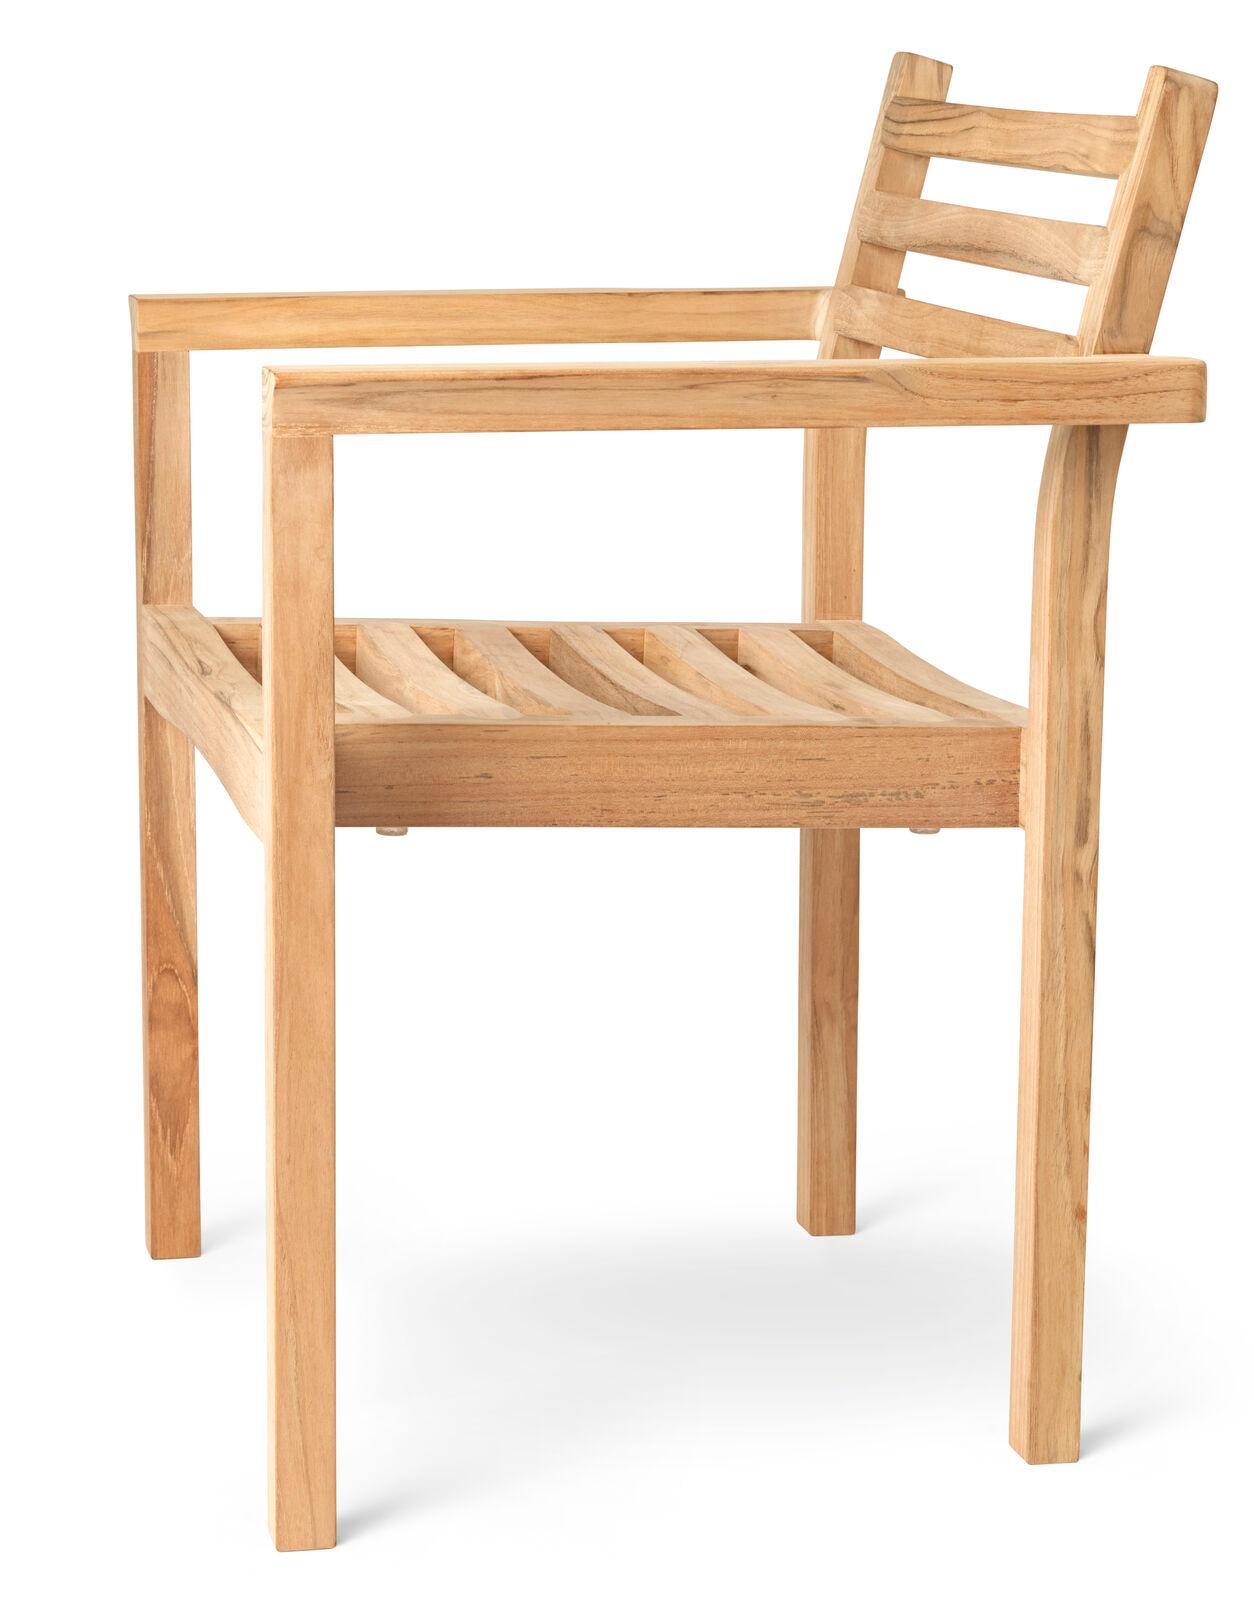 La chaise de salle à manger d'extérieur AH501 a été conçue par Alfred Homann en 2022 dans le cadre de la série AH Outdoor, caractérisée par des lignes strictes élégamment combinées à des détails doux et arrondis. La chaise peut être combinée avec la